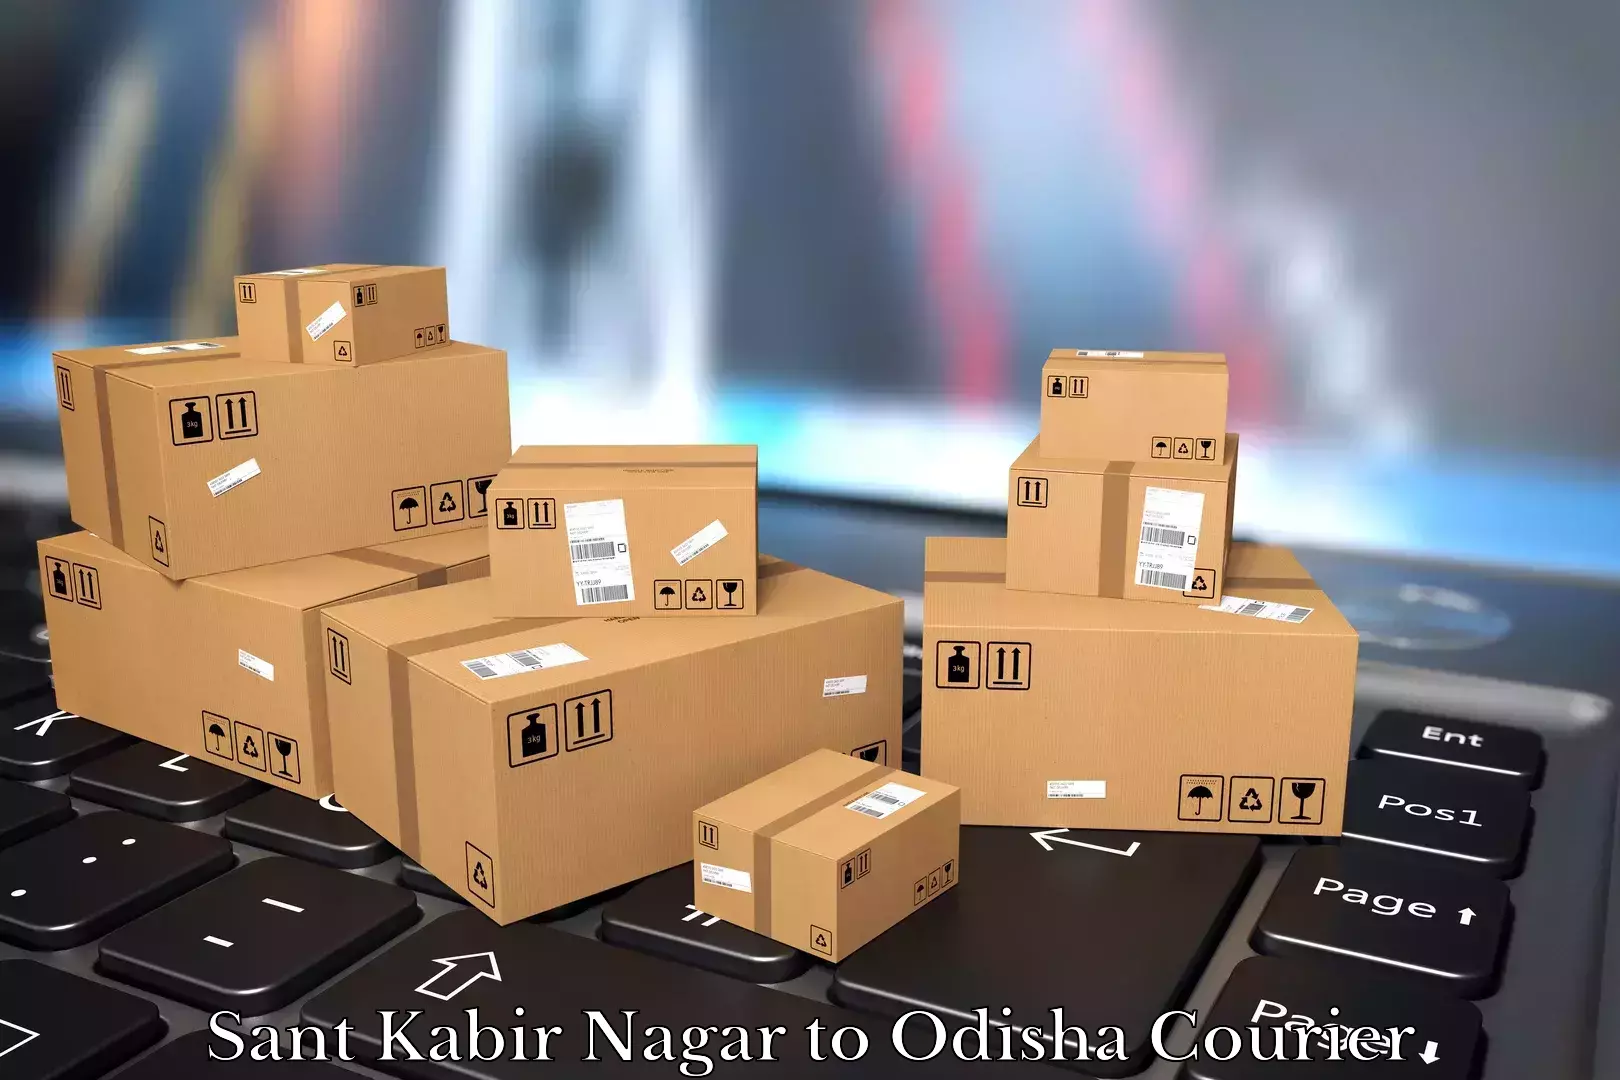 Furniture transport company Sant Kabir Nagar to Paralakhemundi